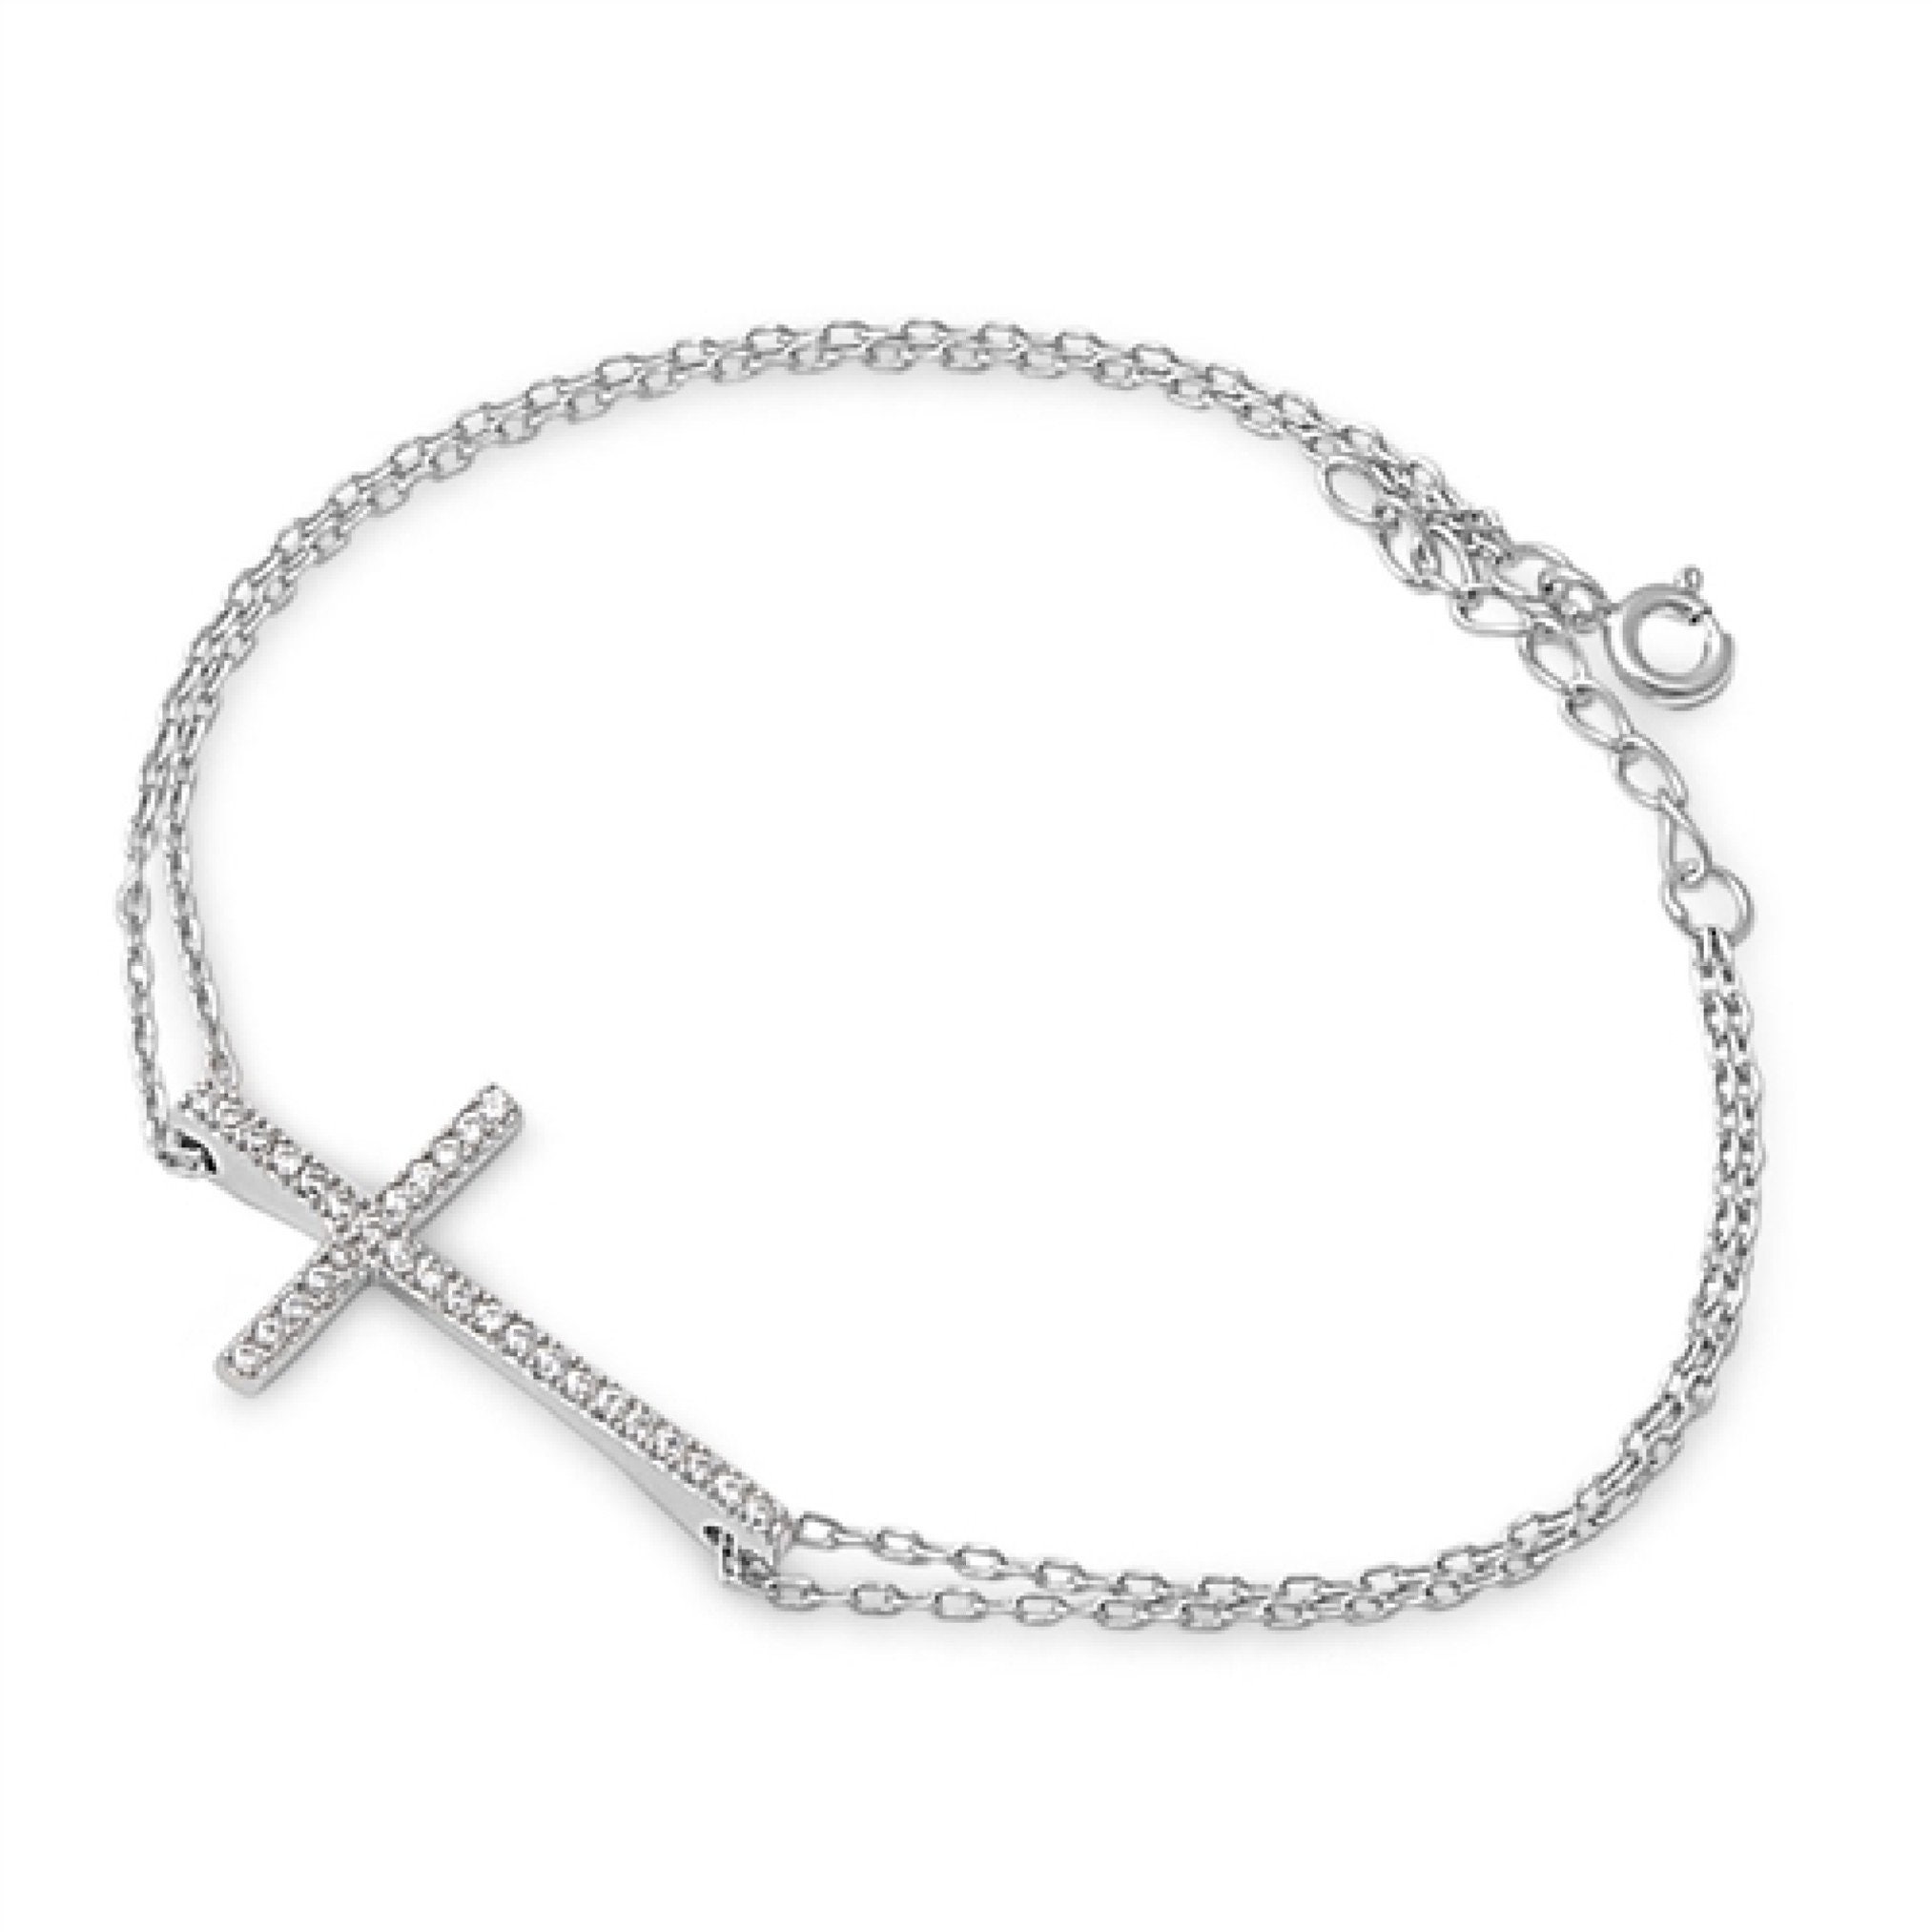 Cross Bracelet for Women Sterling Silver Cz Crystal Cross - Etsy